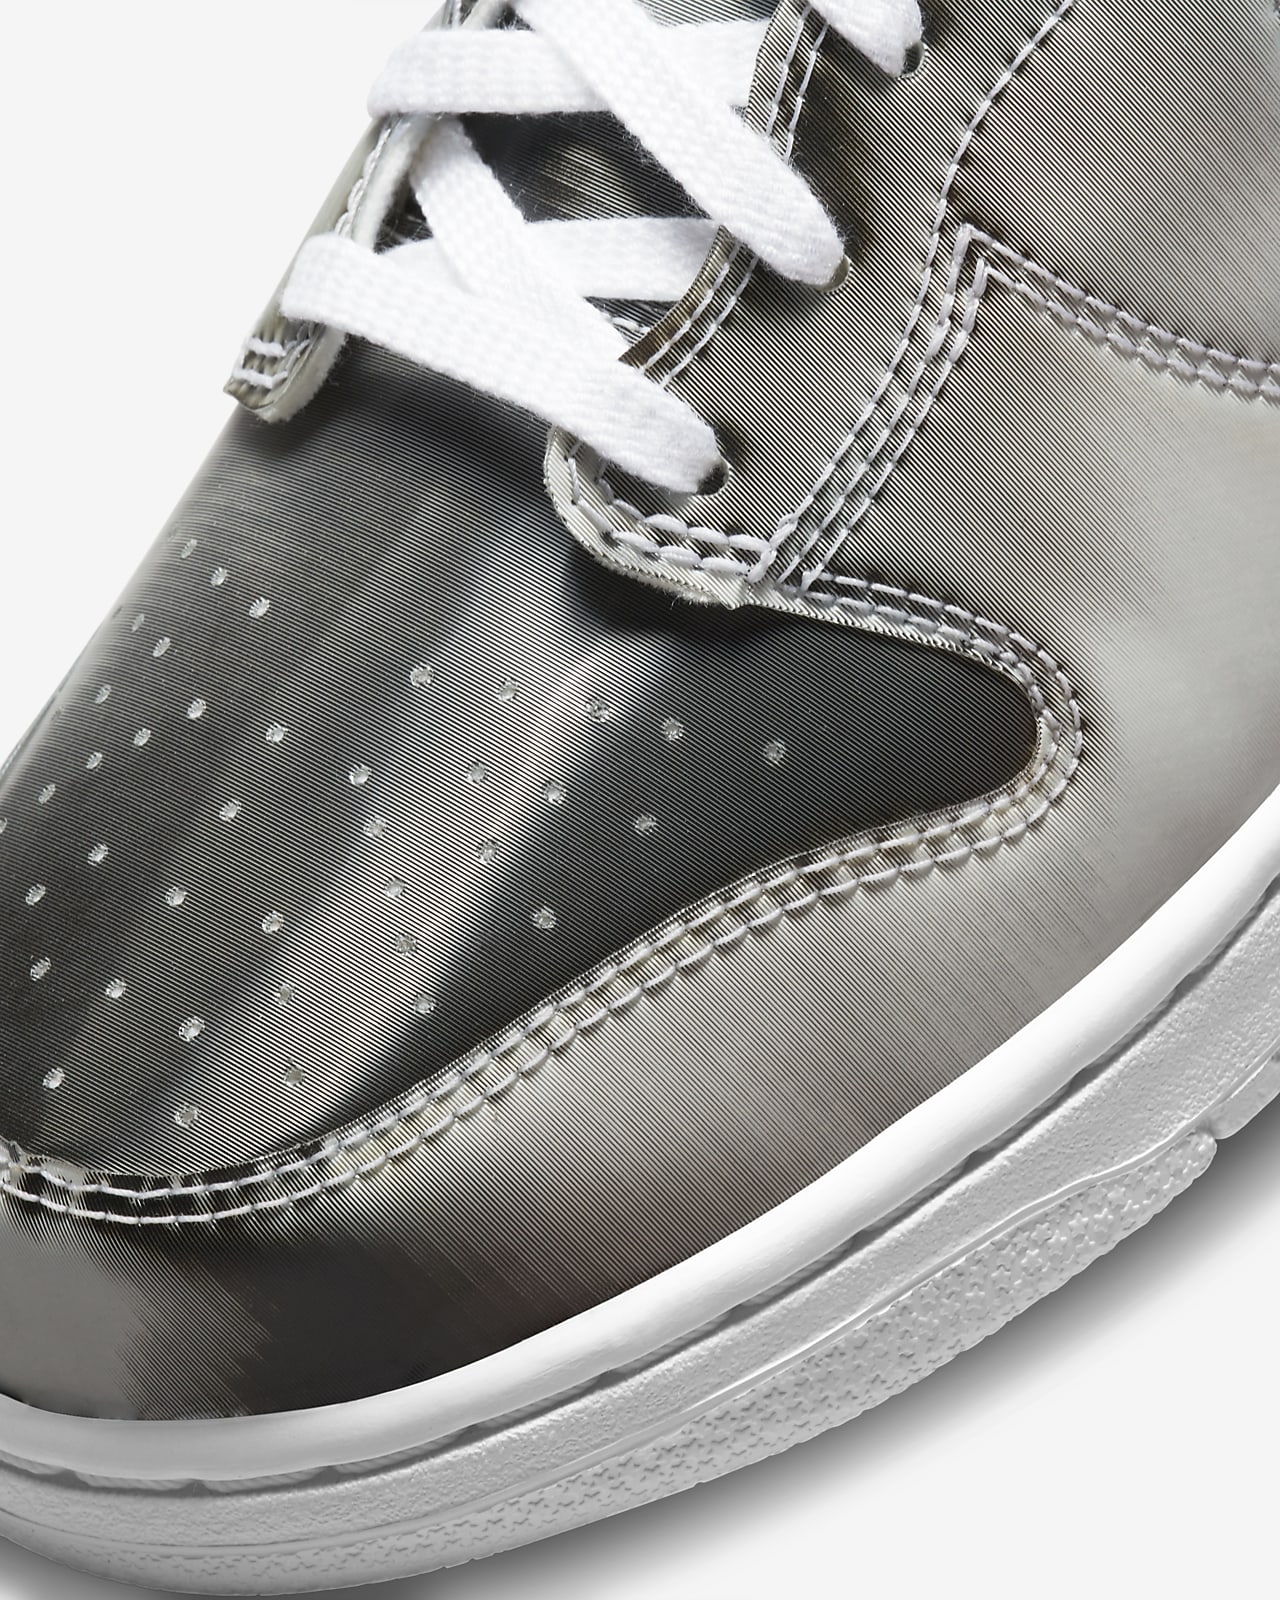 CLOT × Nike Dunk High "Silver" 26.5cm